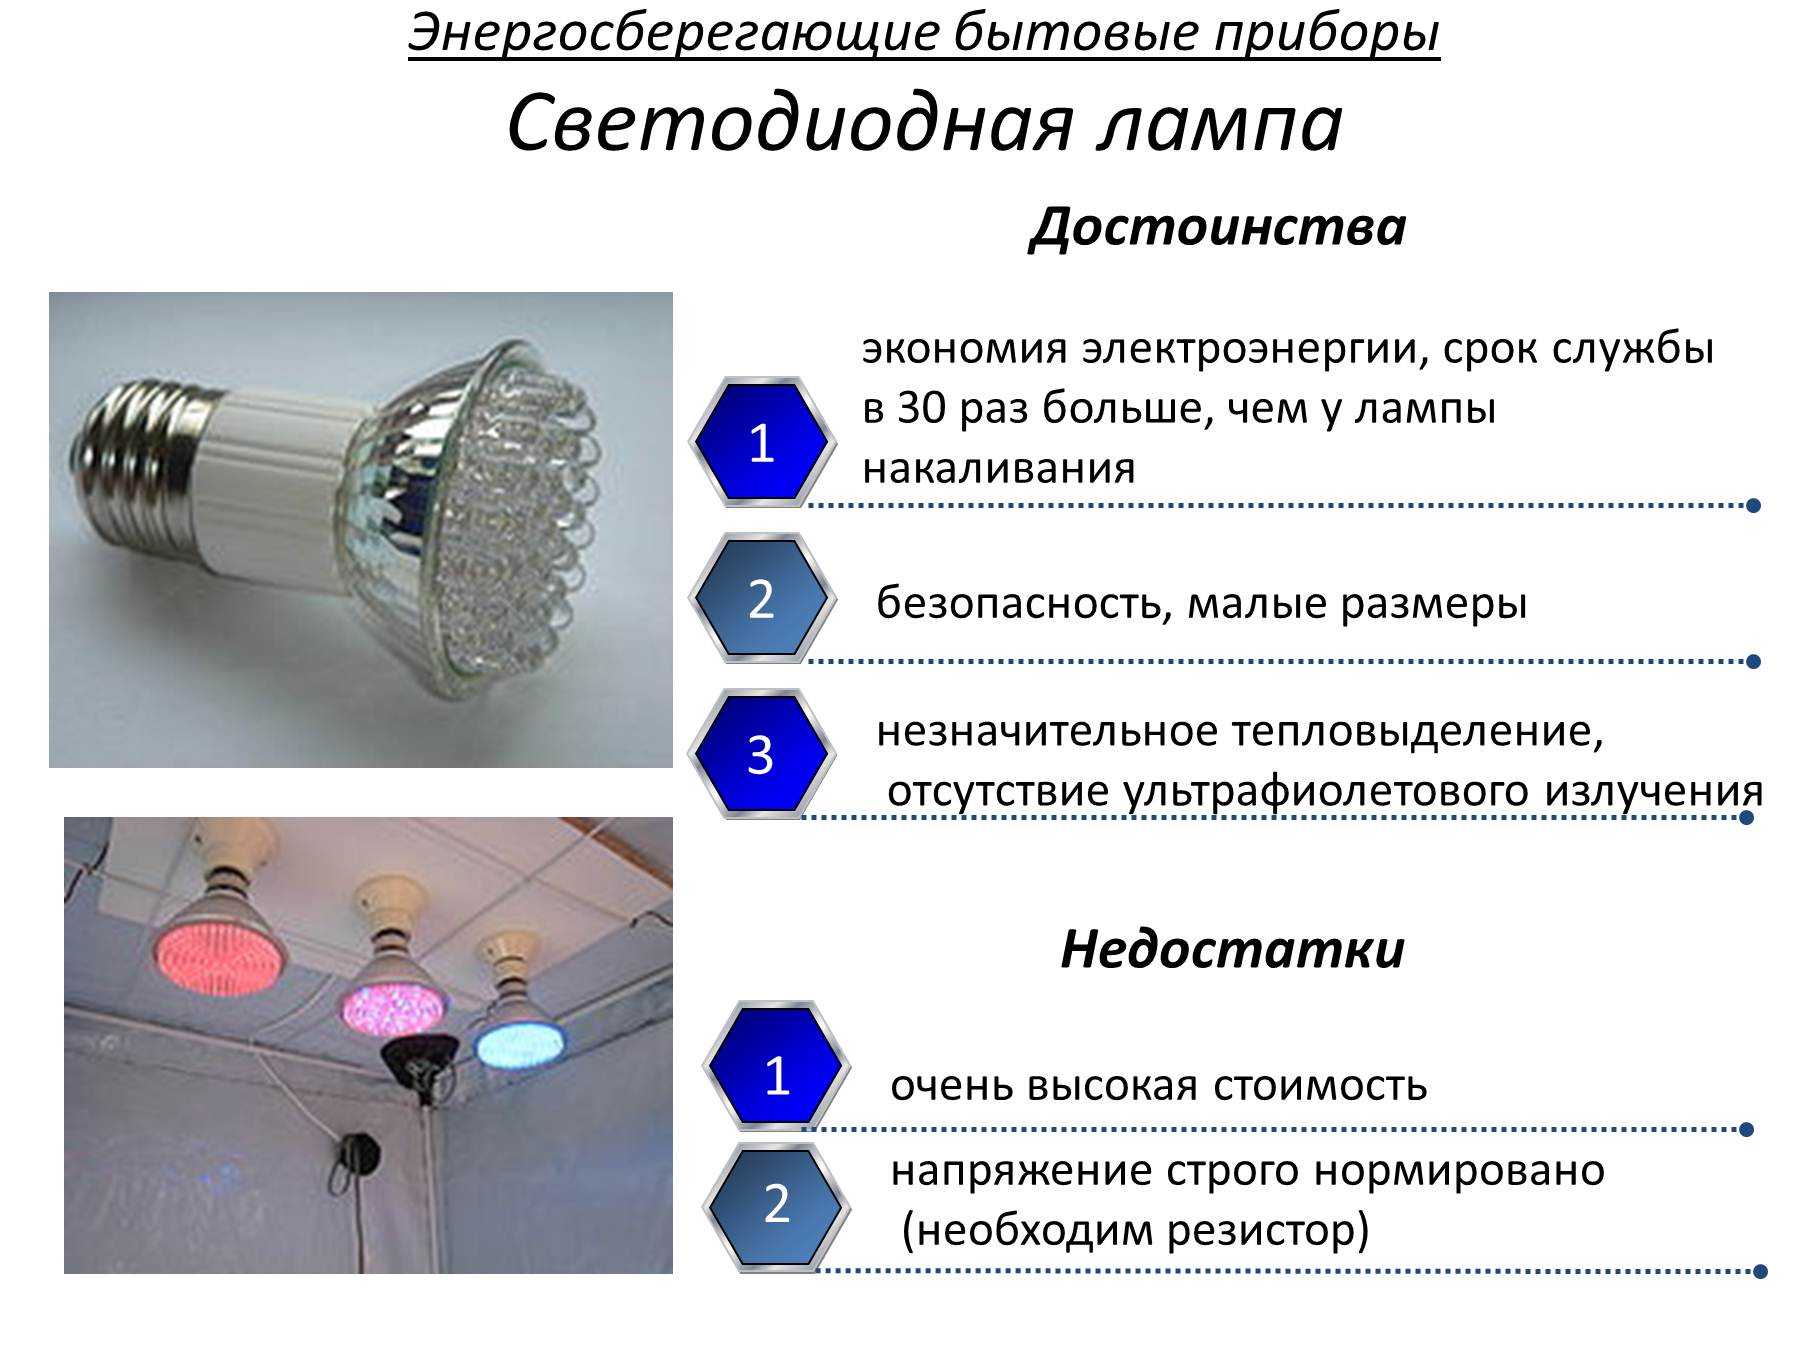 Как выбрать светодиодную лампу: правила и критерии выбора led лам. советы экспертов как правильно выбрать качественную лампу (95 фото)